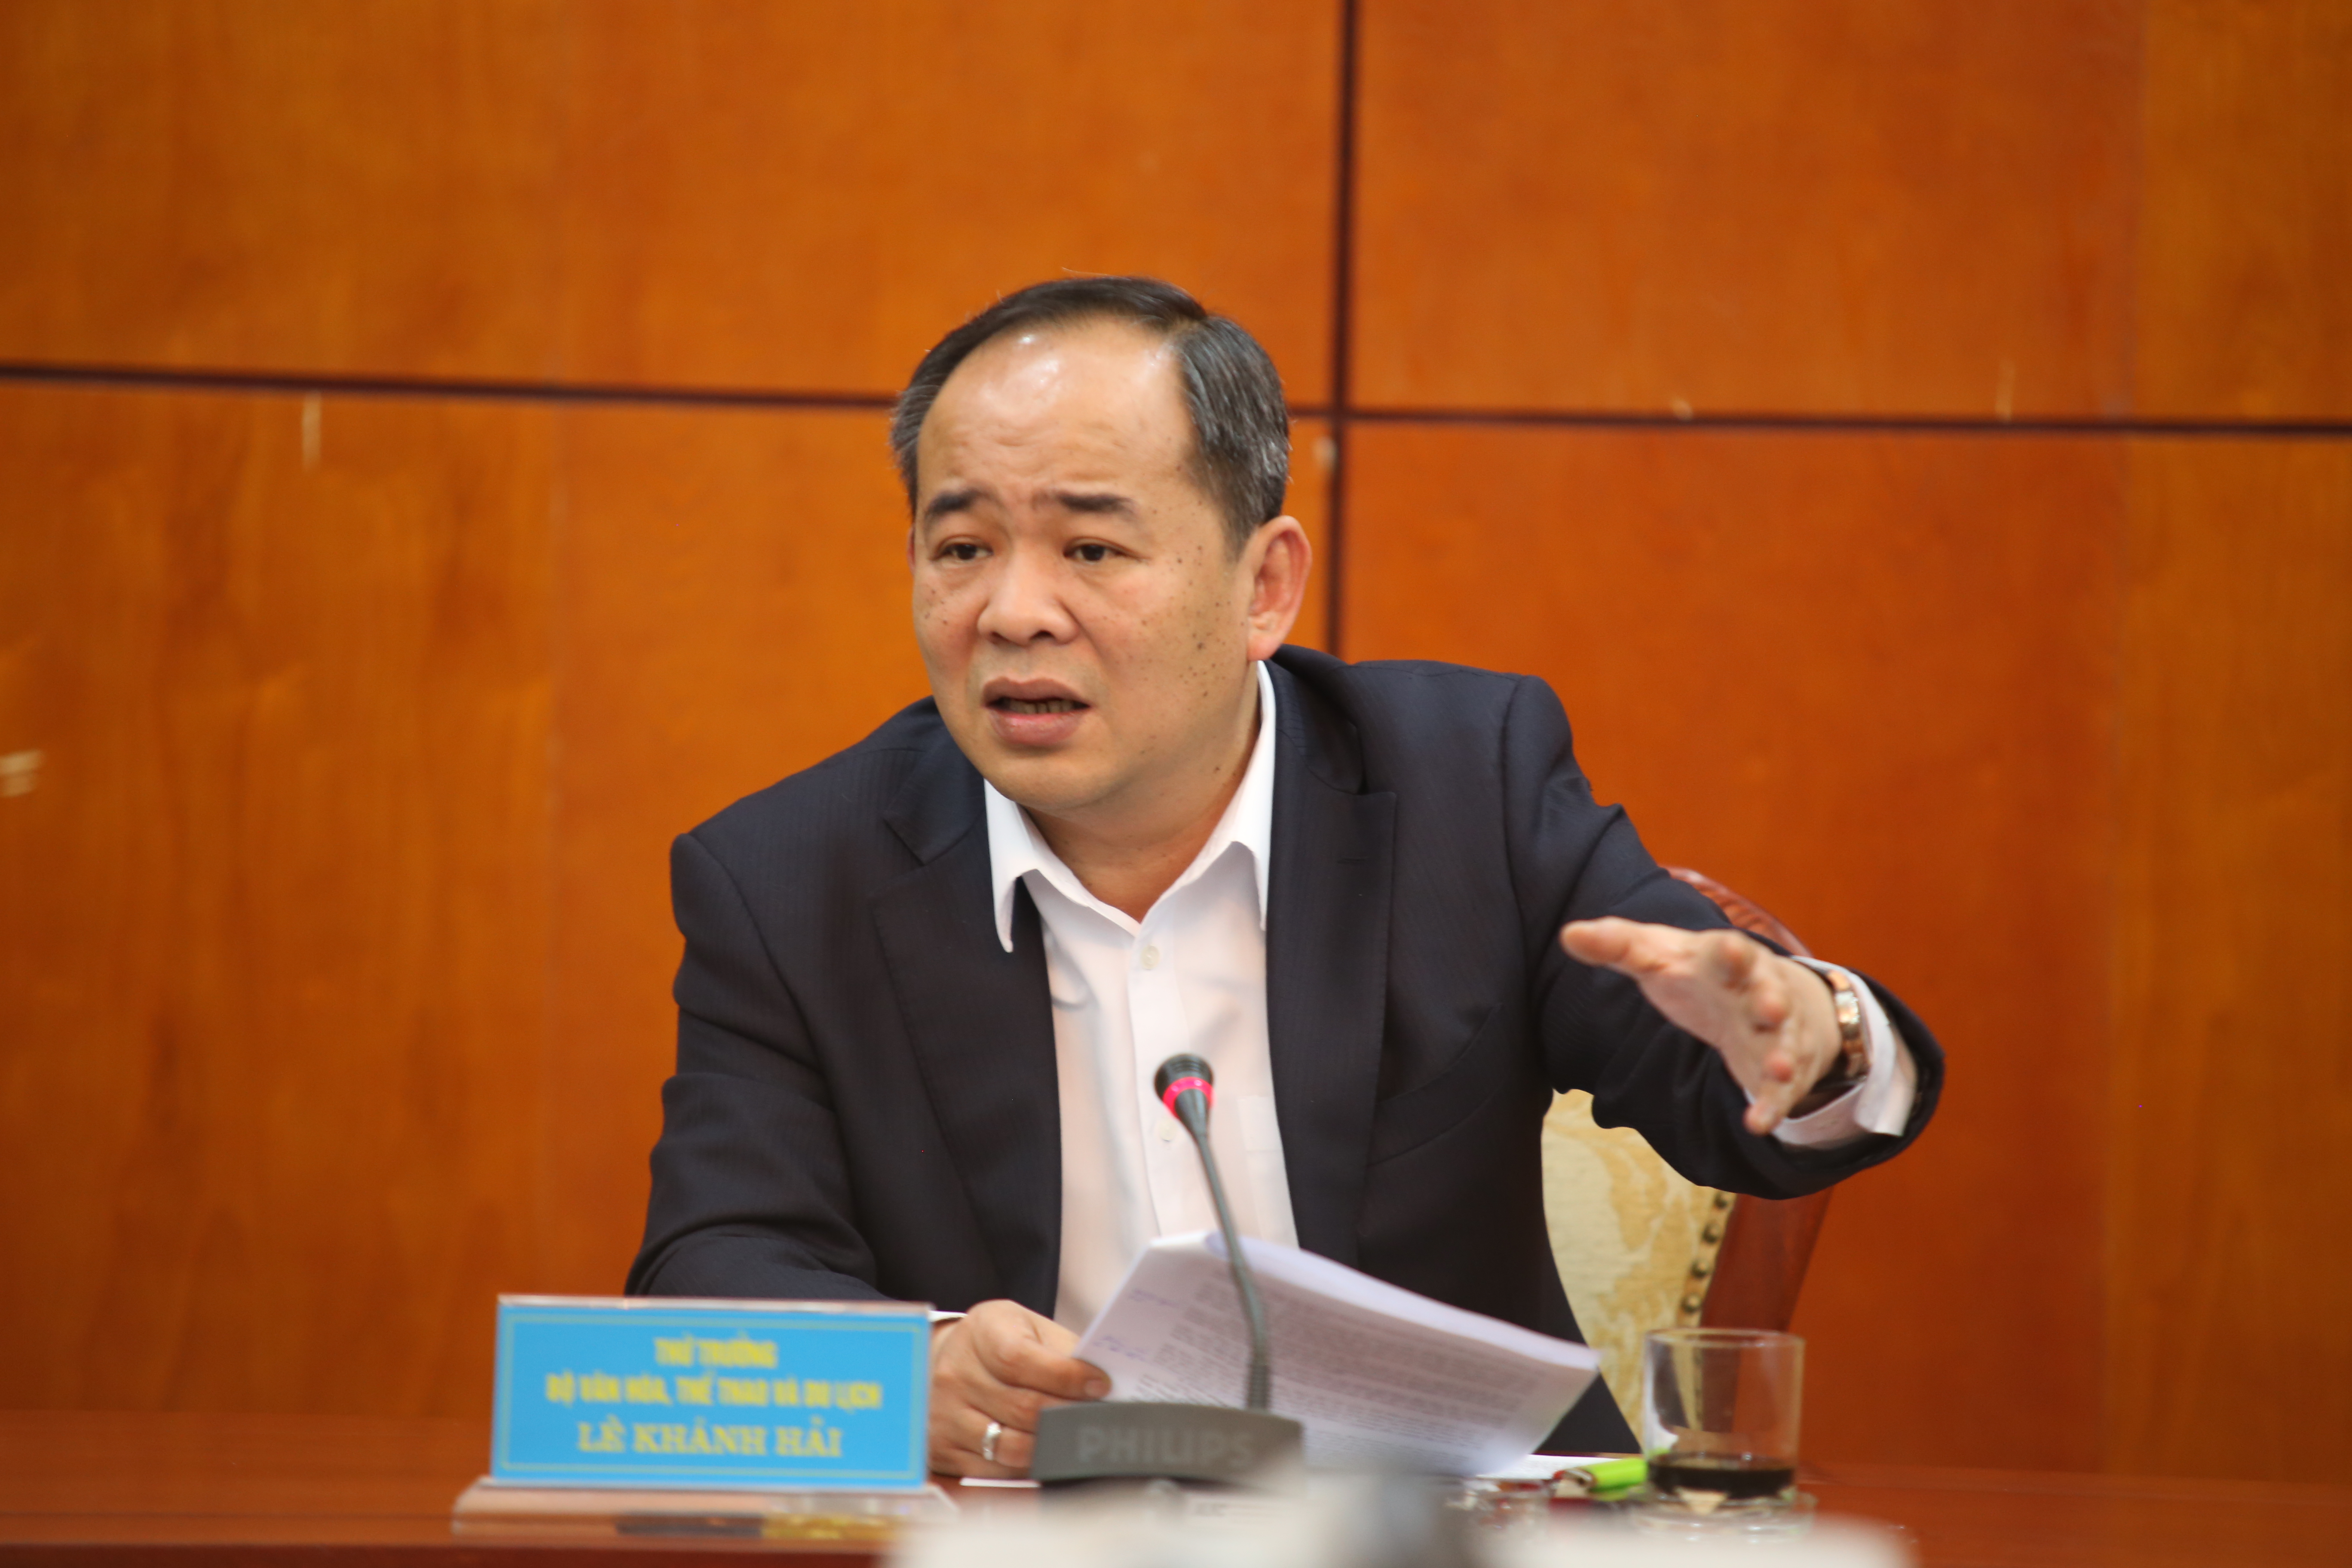 Thứ trưởng Lê Khánh Hải: Tổng cục TDTT cần khẳng định vai trò trong công tác TDTT Quần chúng